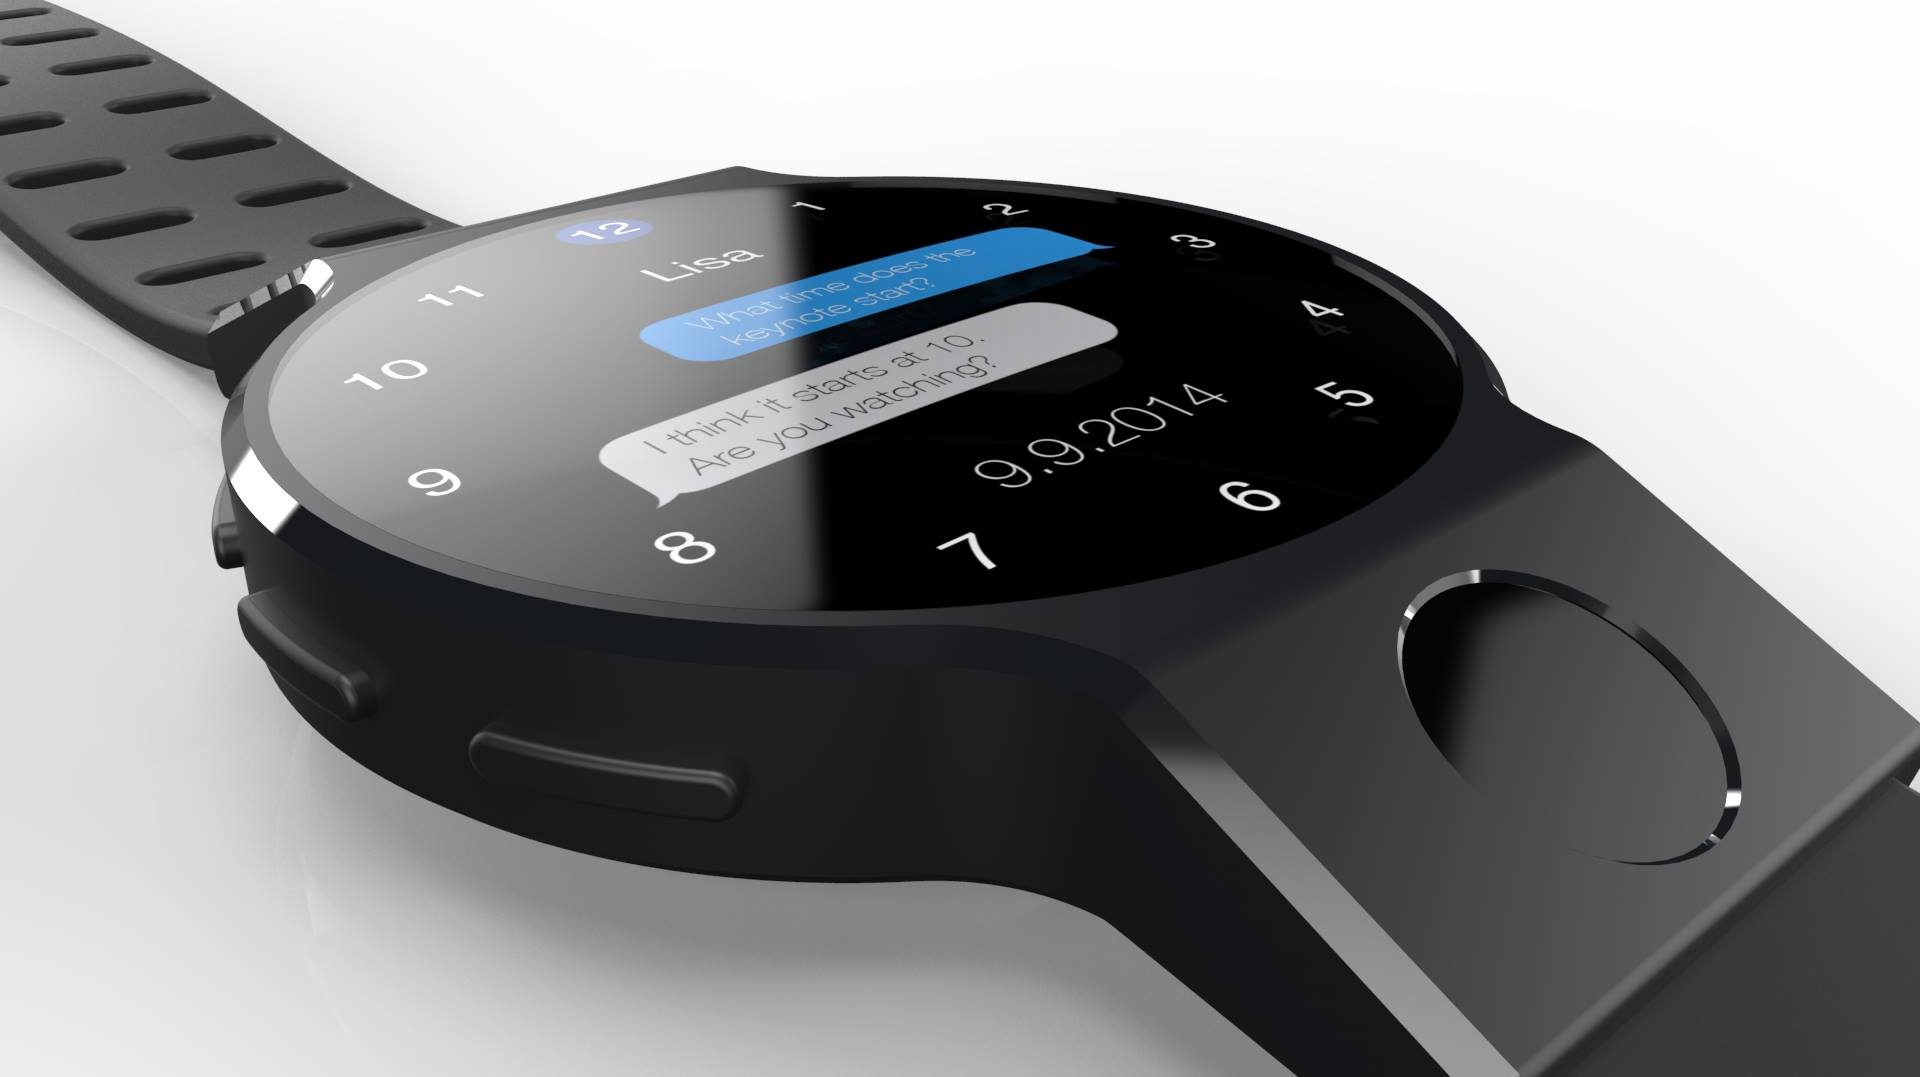 Apple Watch thế hệ thứ 3 sẽ có thiết kế hoàn toàn mới, có 4G LTE, pin